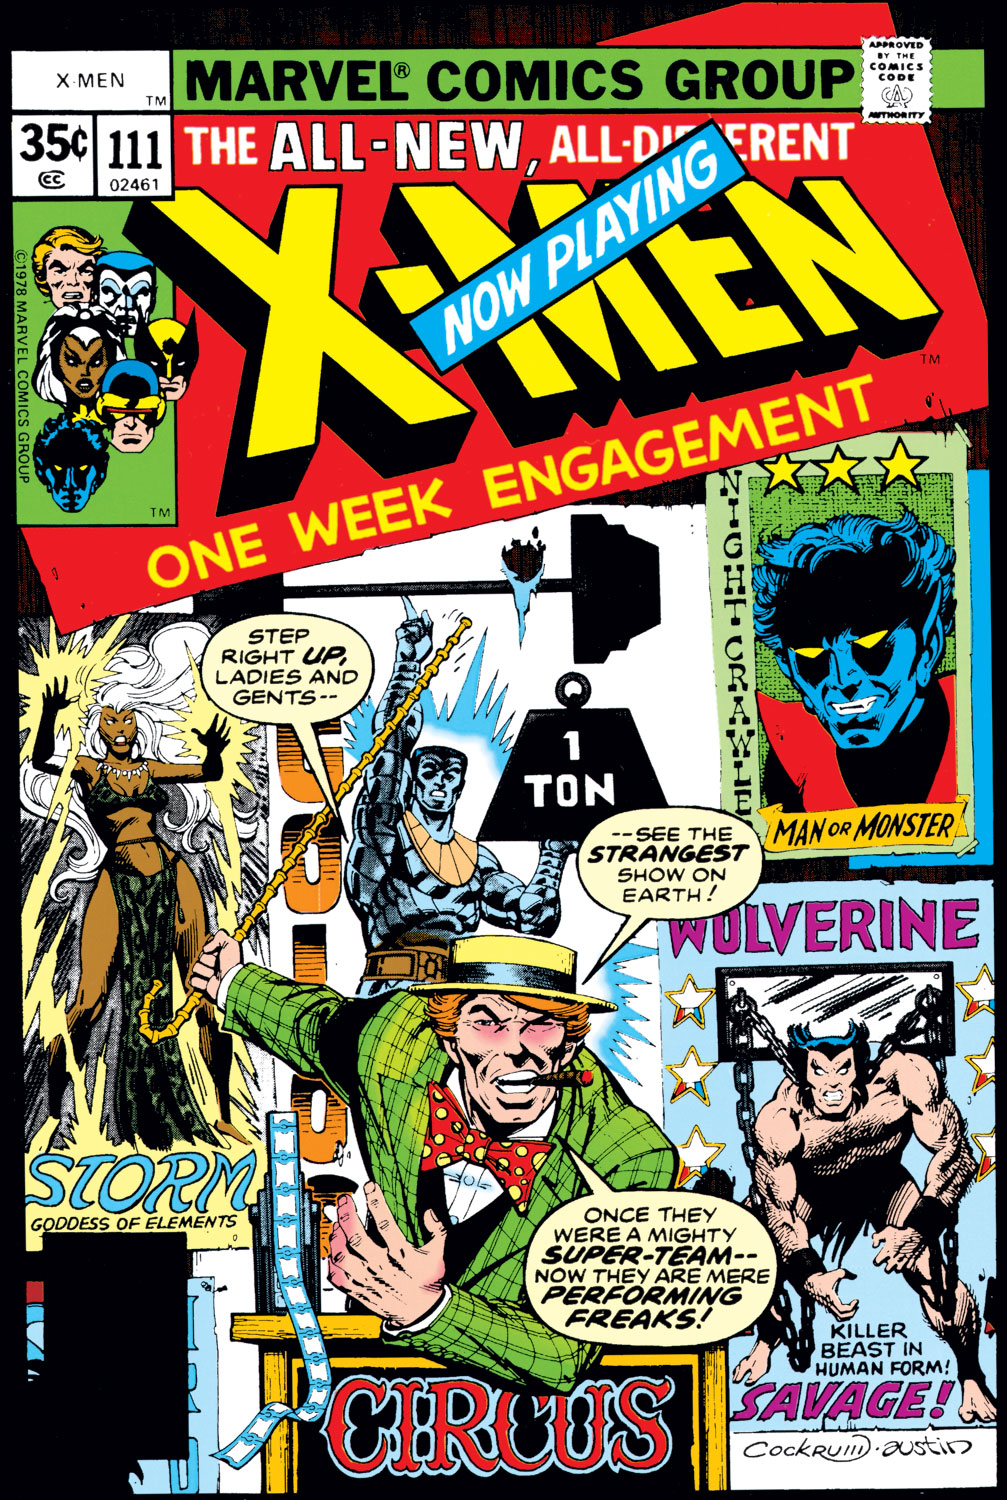 Vol 2 X-Men #111 